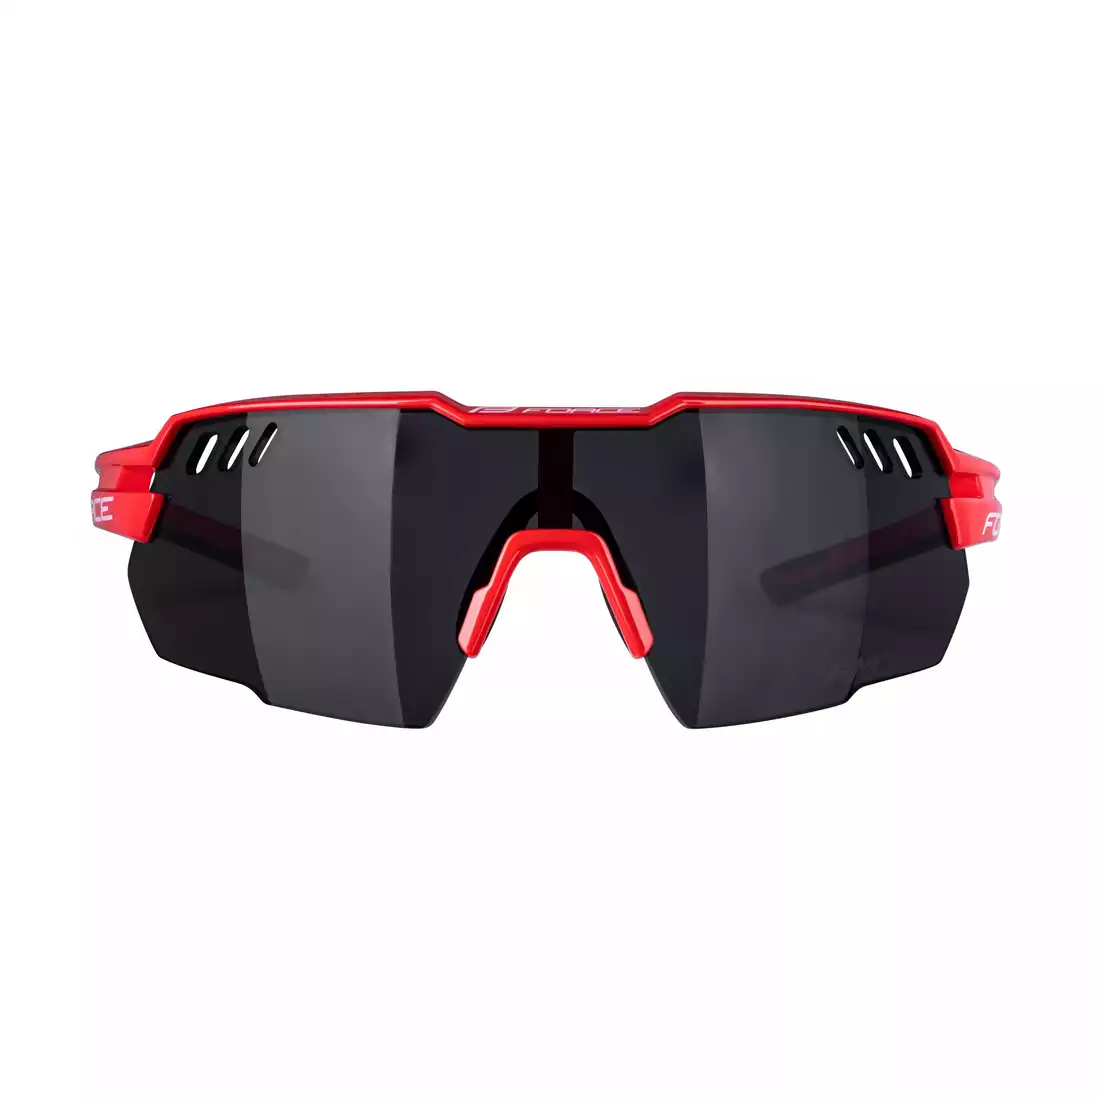 FORCE okulary przeciwsłoneczne AMOLEDO, czerwono-szare, czarne szkła 910861